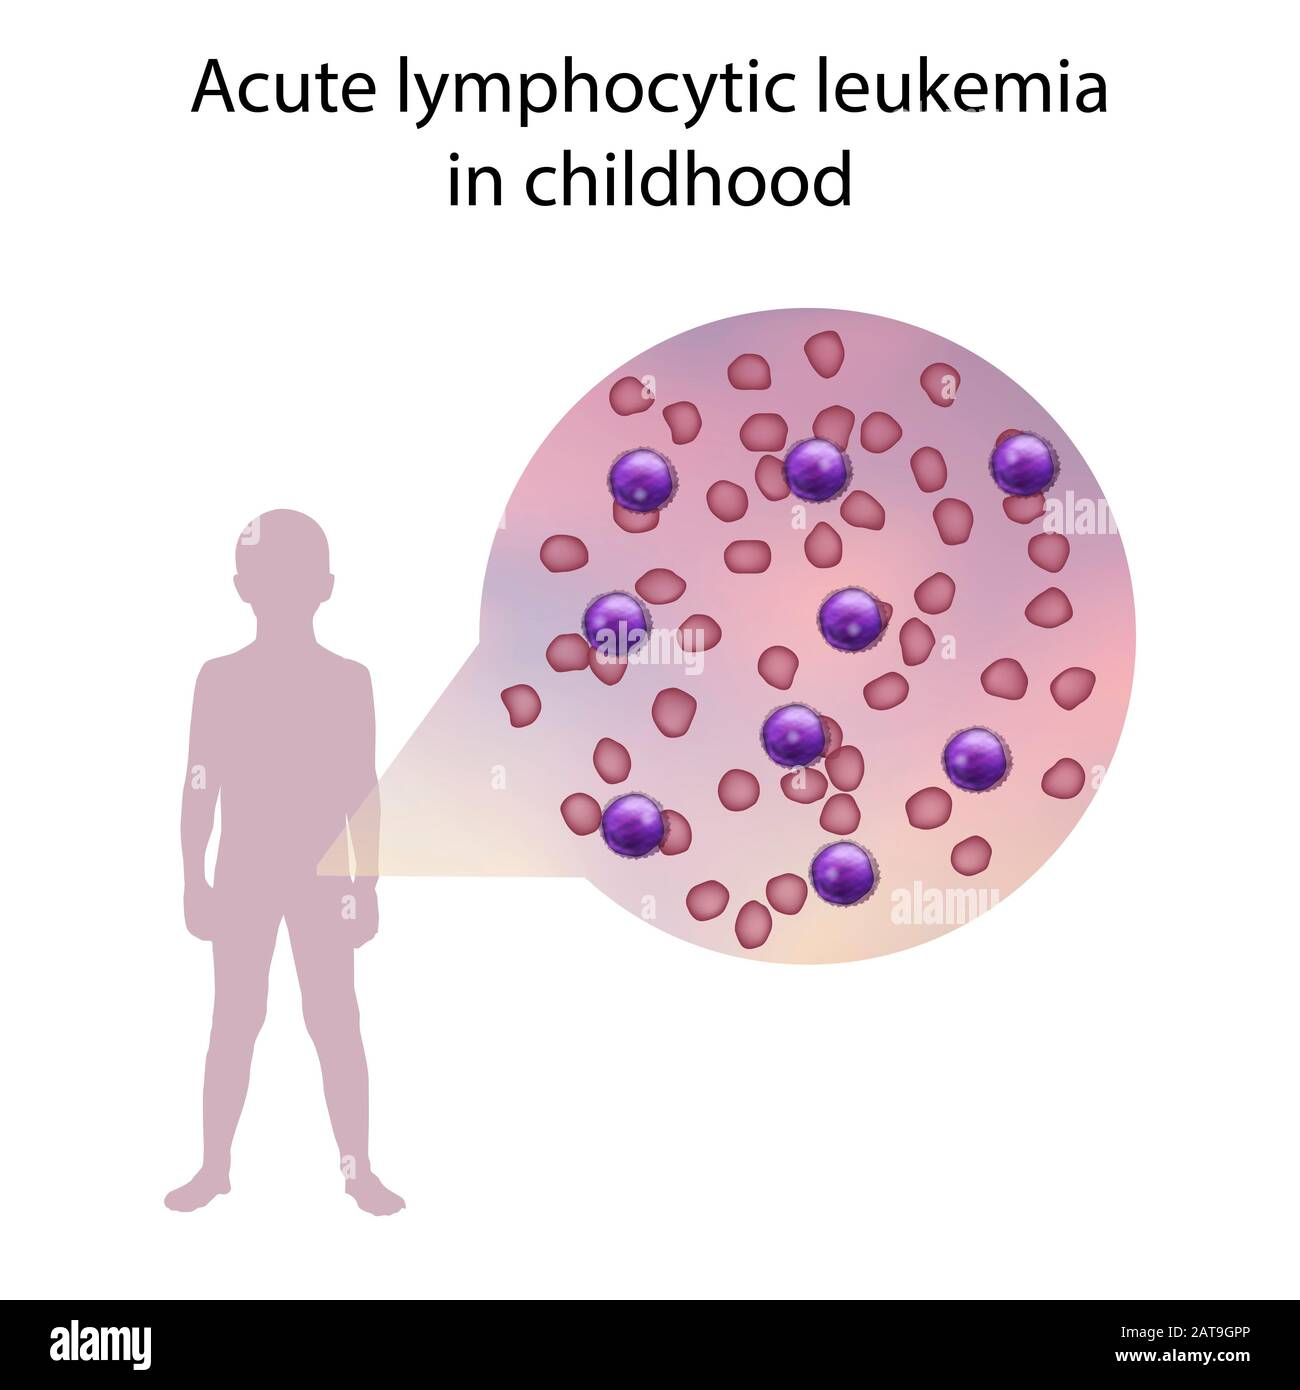 Acute lymphocytic leukaemia in childhood, illustration Stock Photo